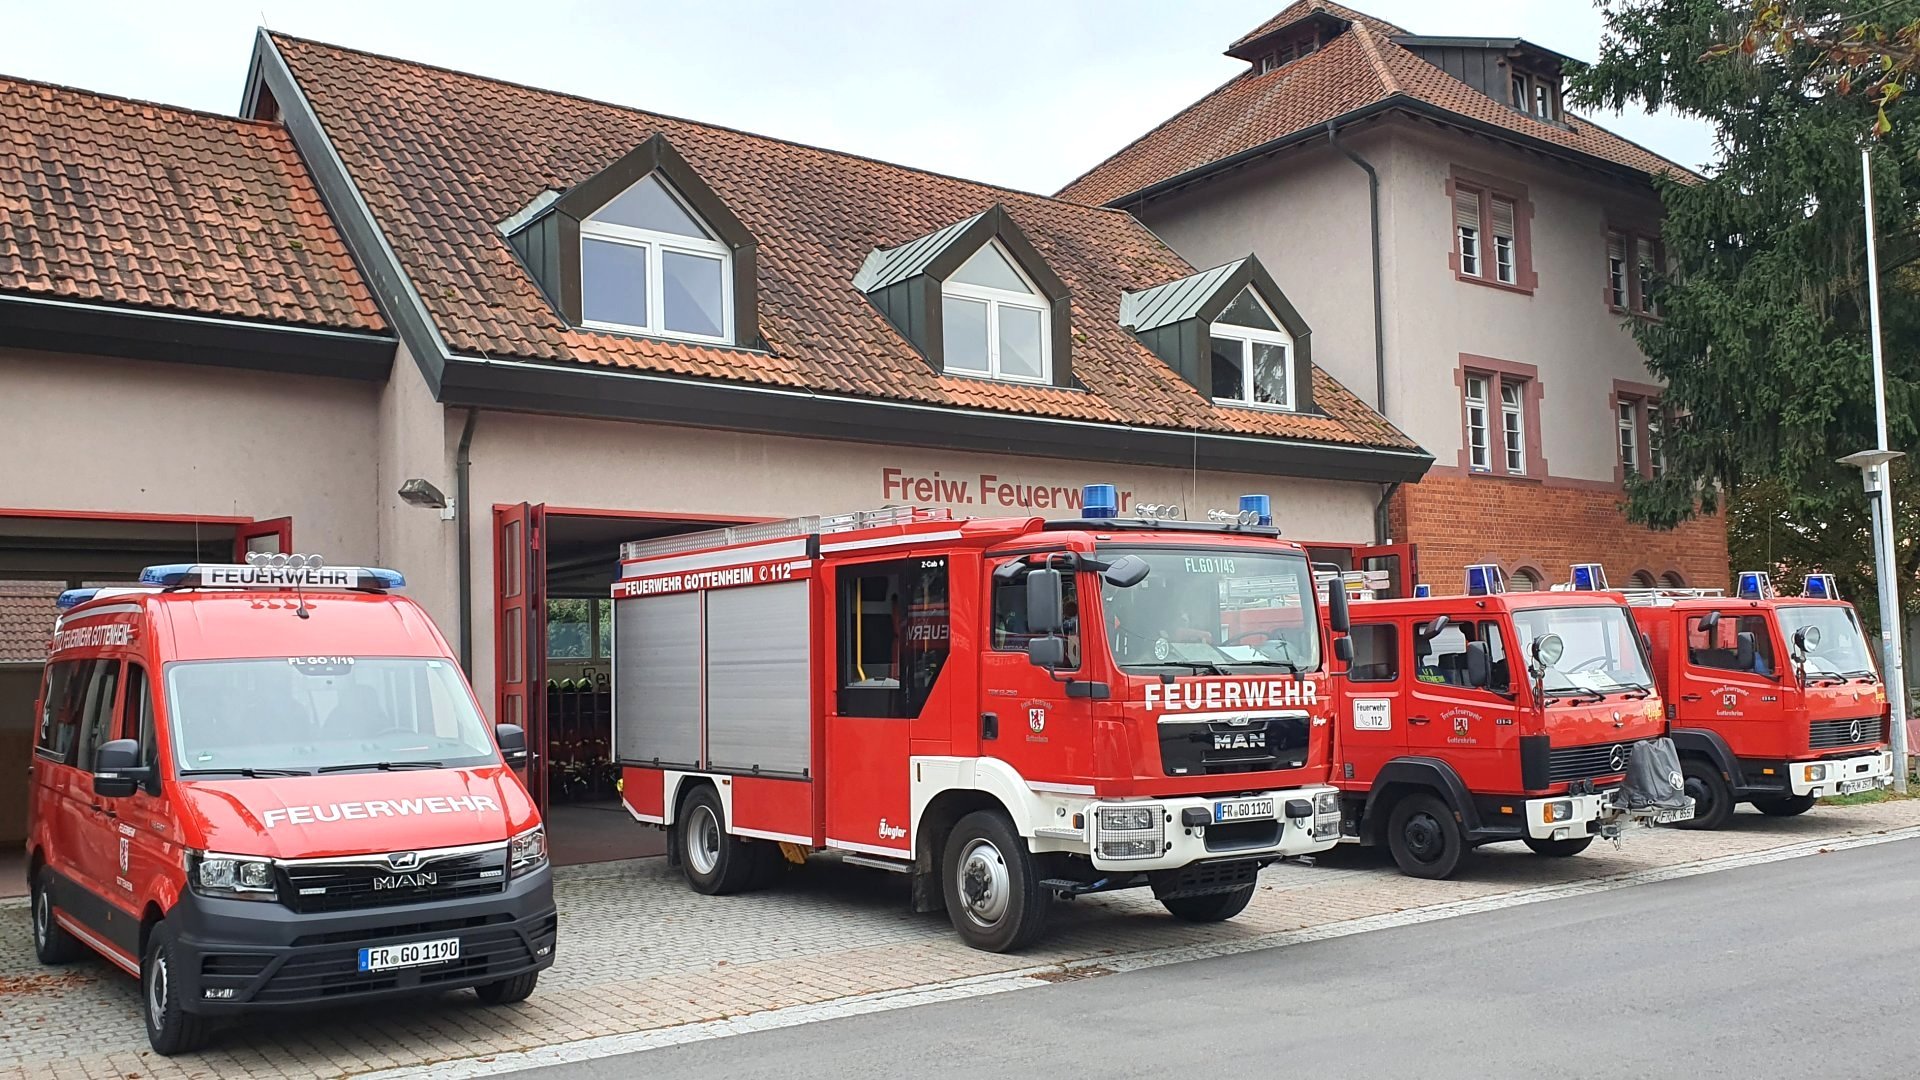 Feuerwehrhaus mit Fahrzeugen